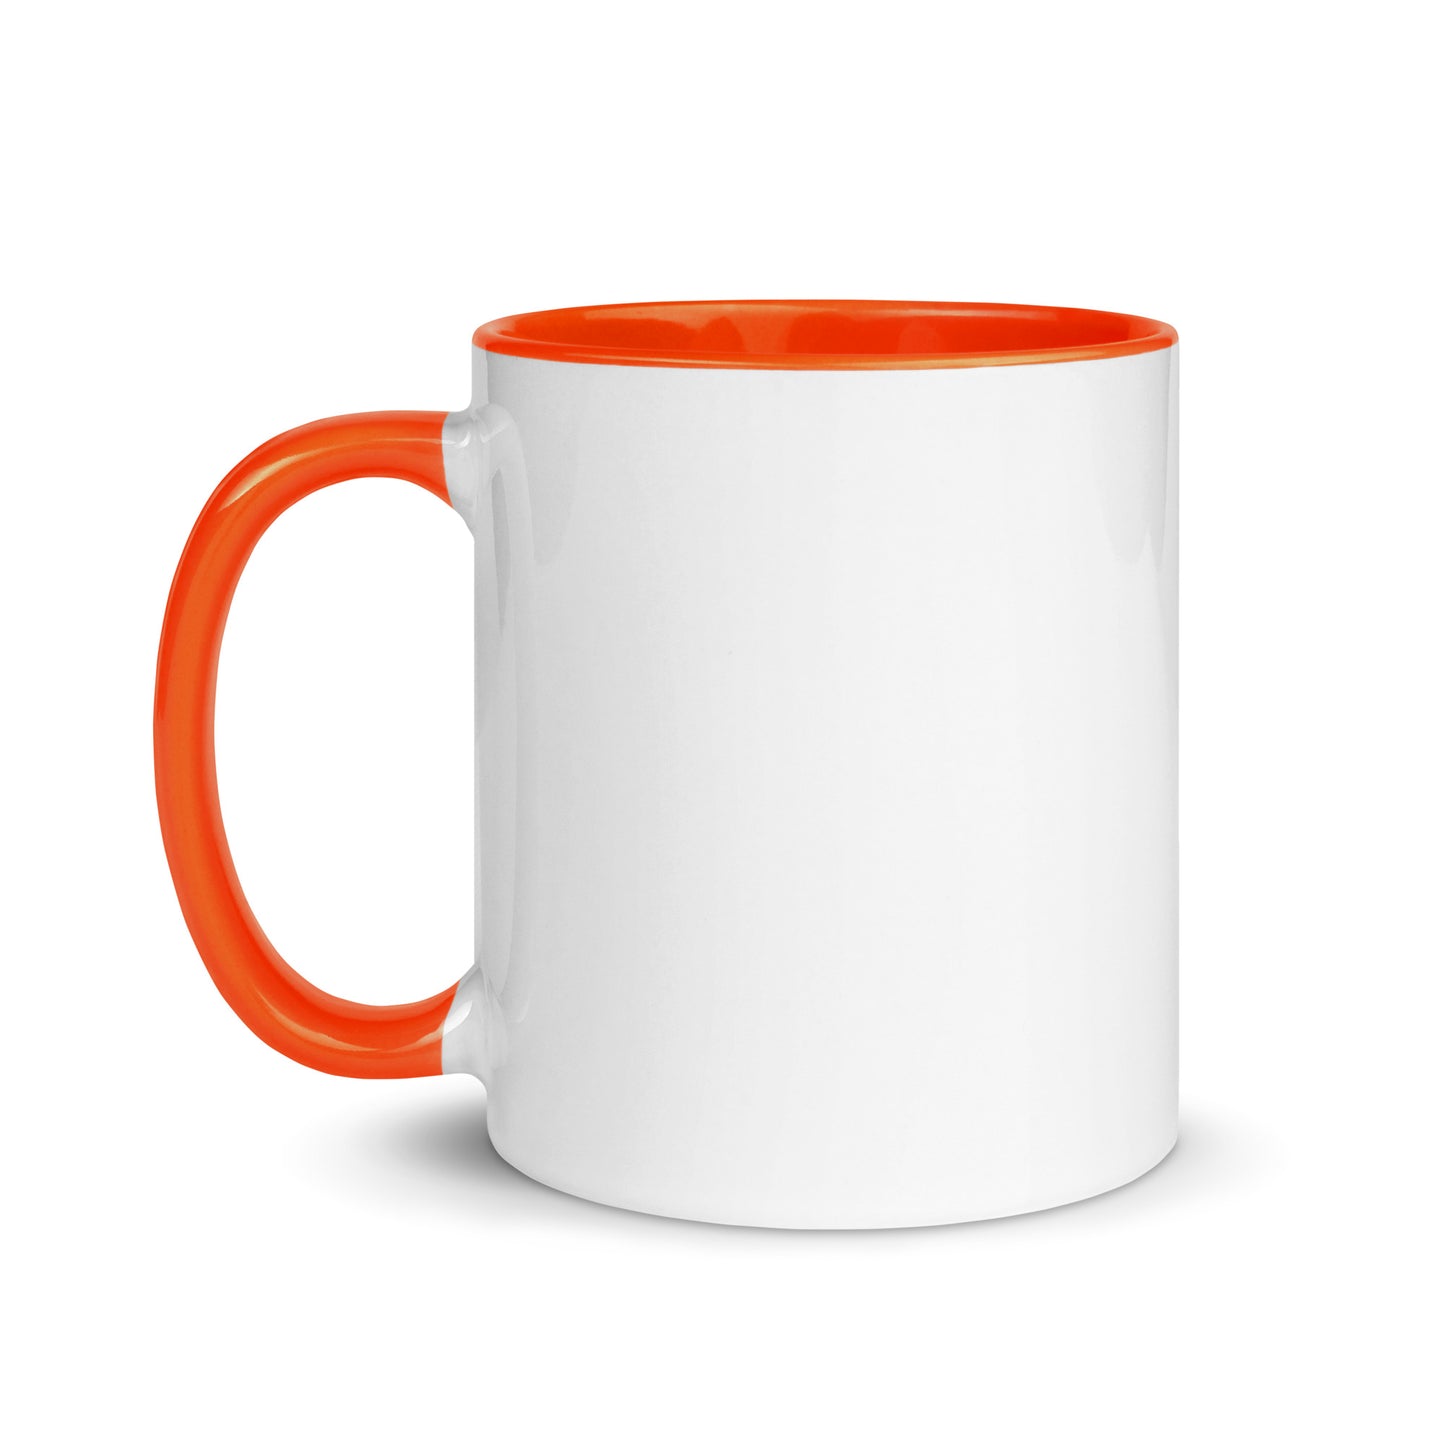 It's Lit Mug with Color Inside